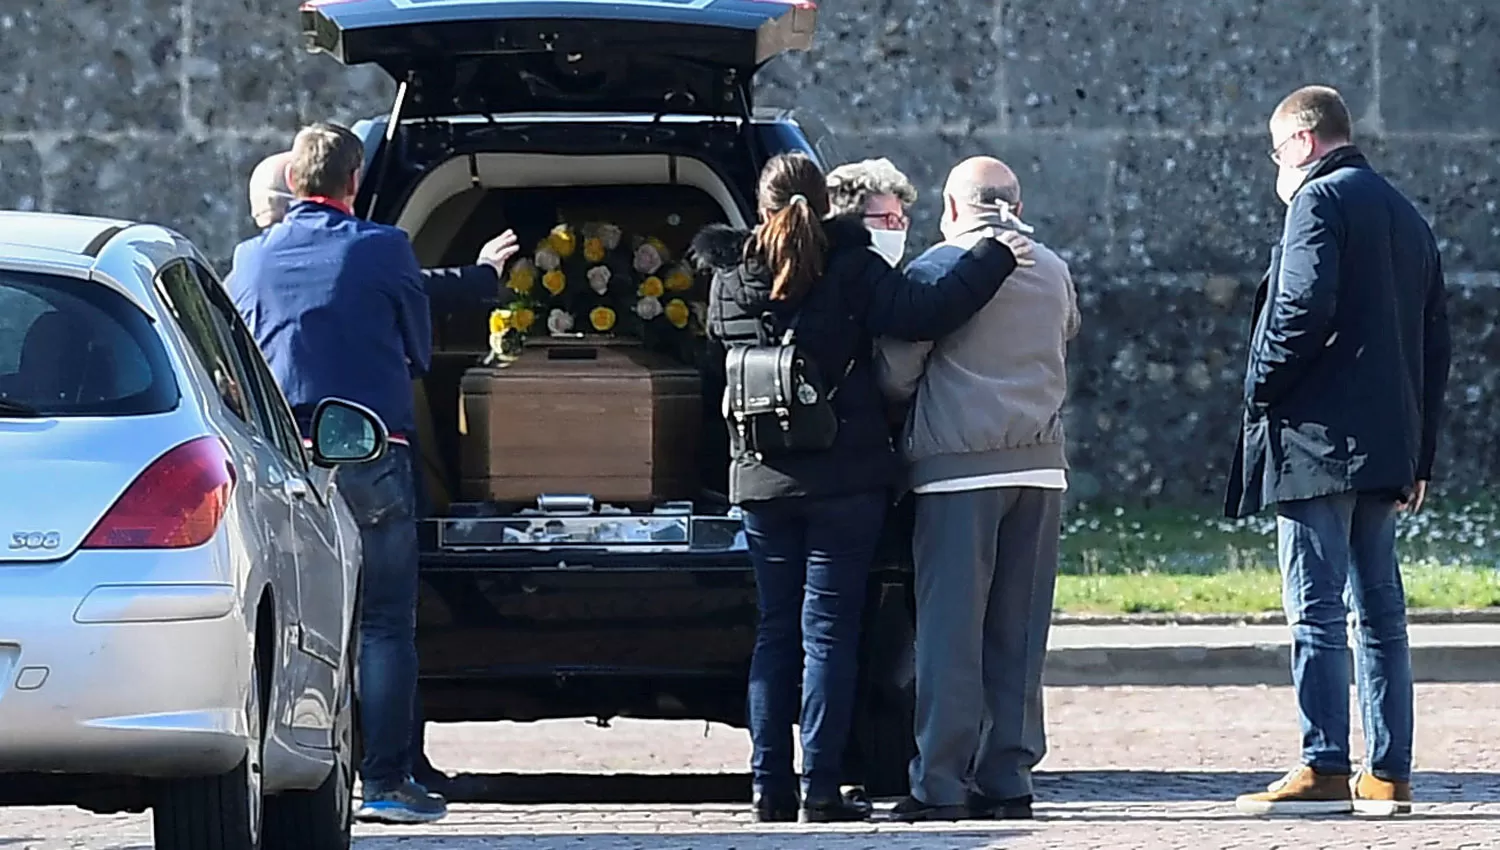 SIN CONSUELO. Familiares despiden a uno de los fallecidos por coronavirus en Italia.